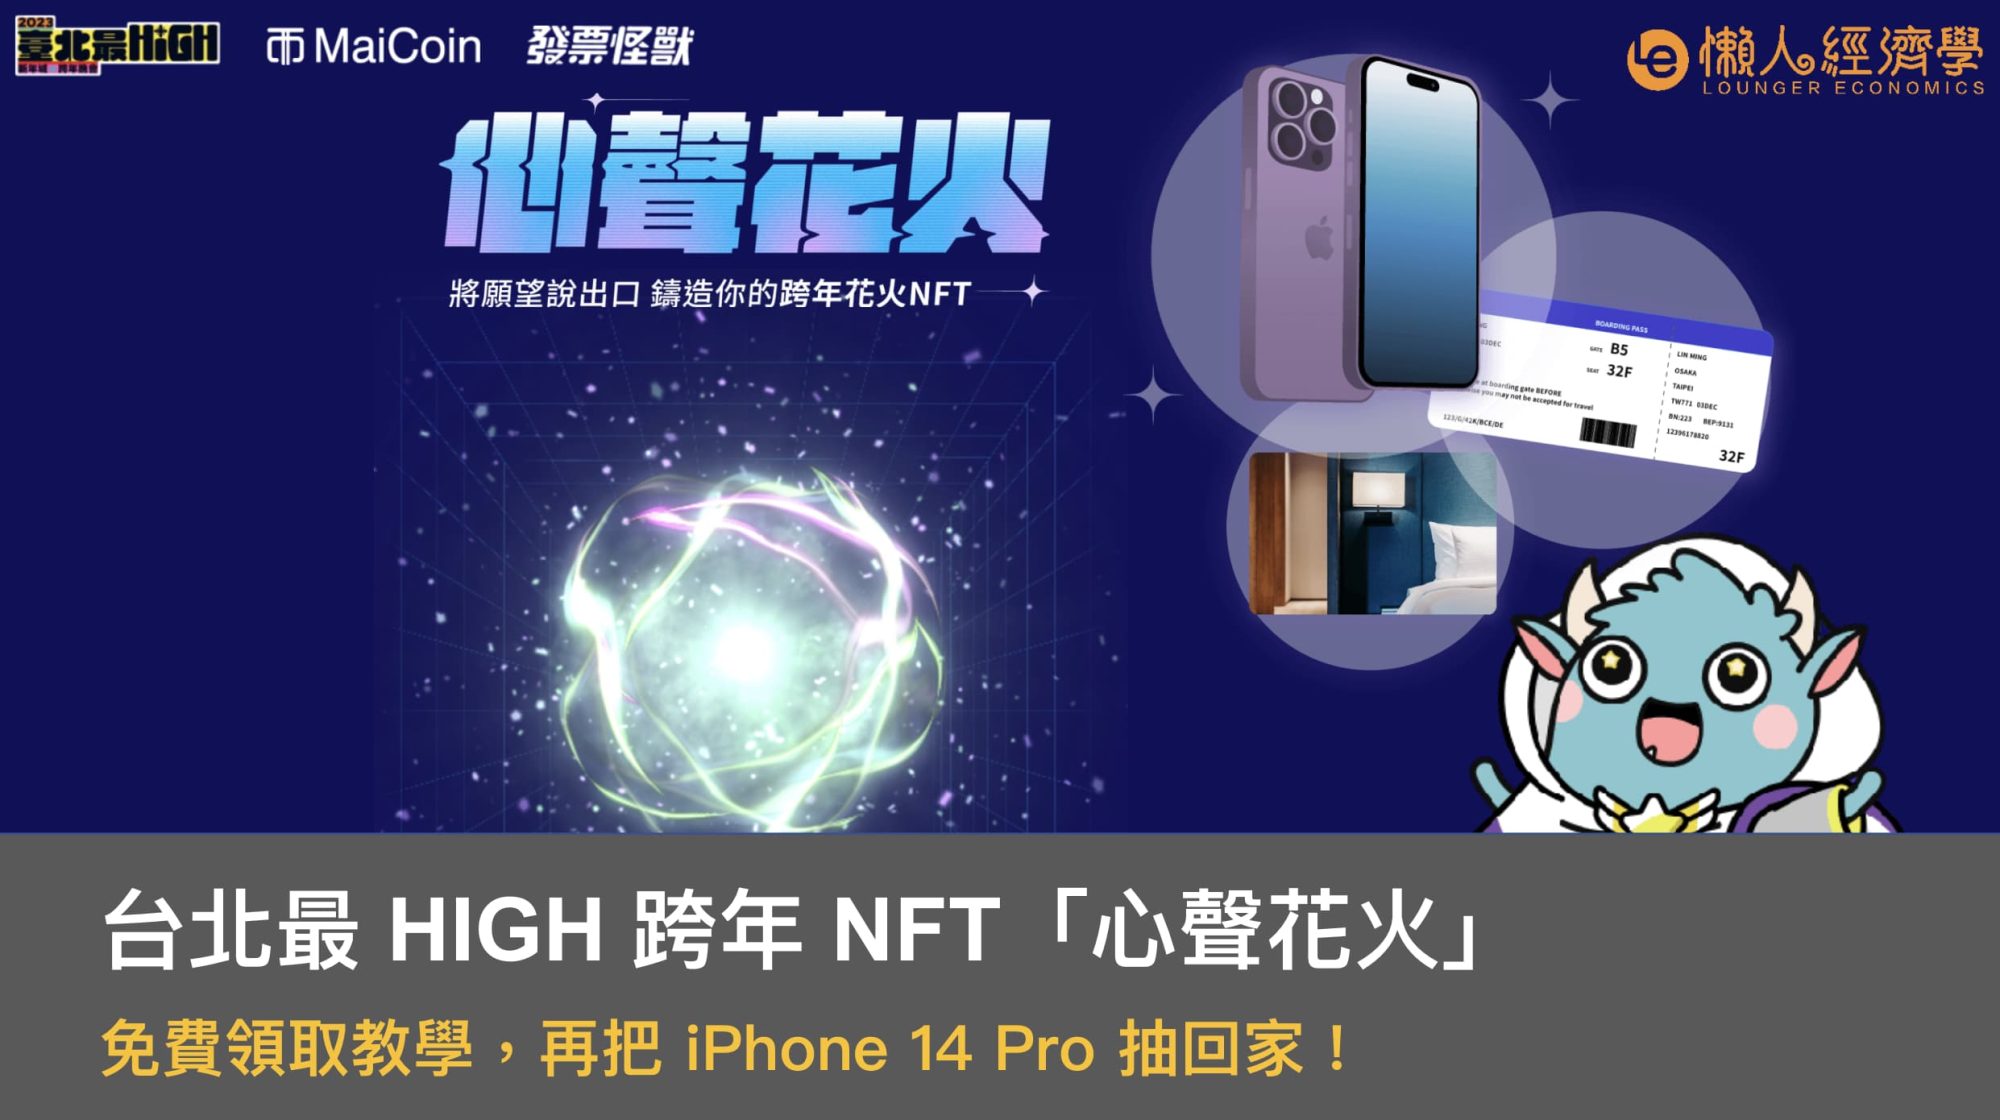 台北最 HIGH 跨年免費 NFT「心聲花火」領取教學，再把 iPhone 14 Pro 抽回家